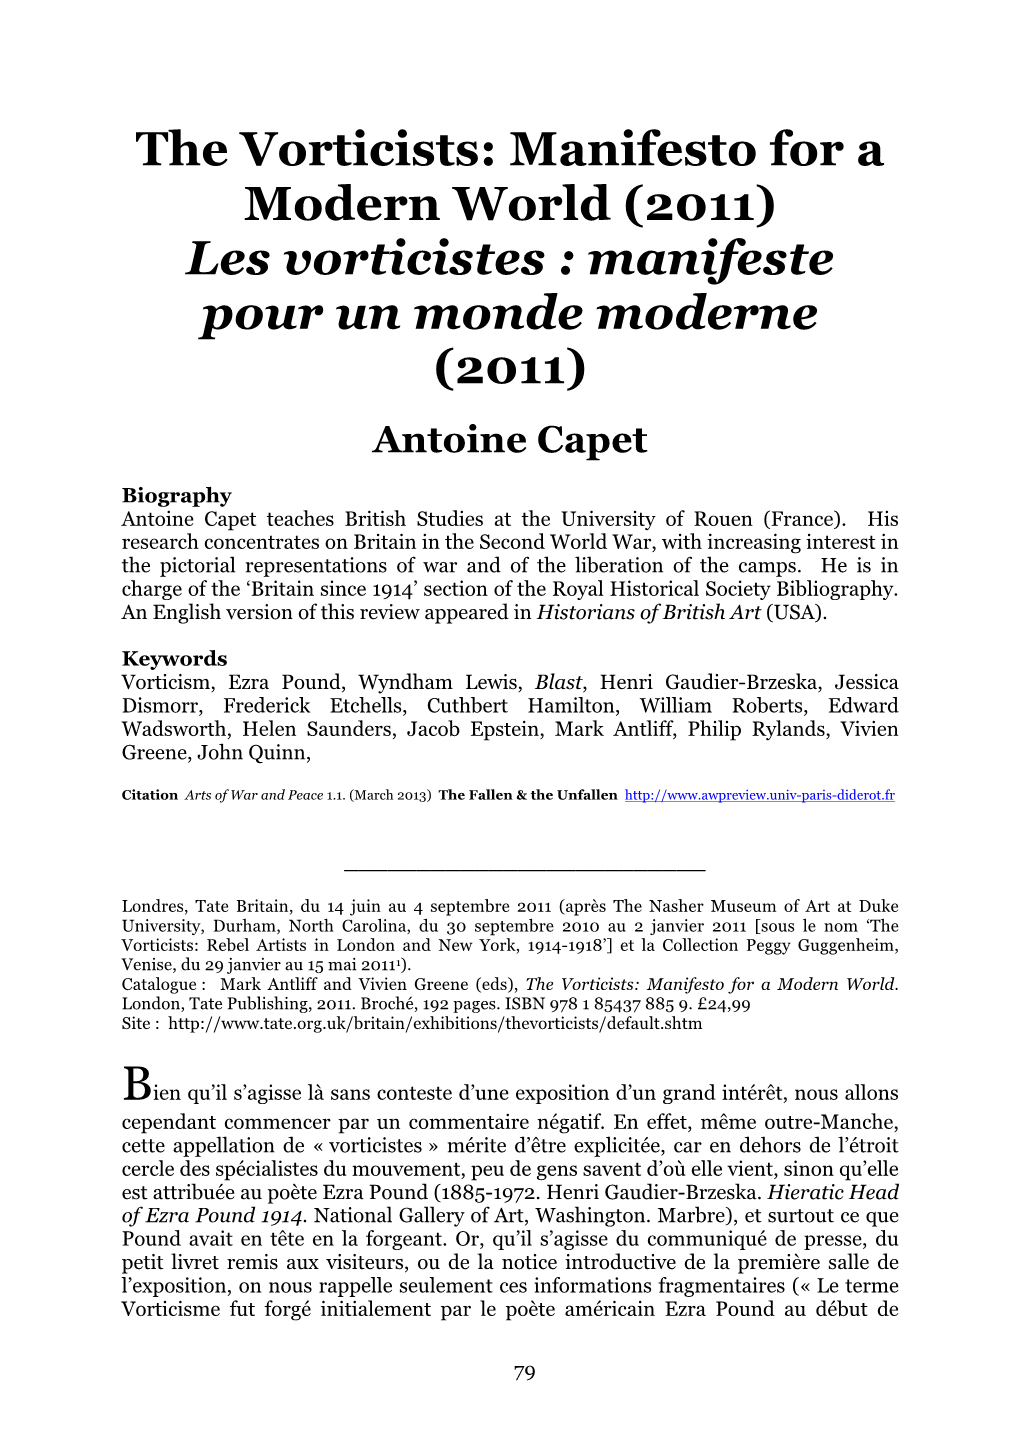 The Vorticists: Manifesto for a Modern World (2011) Les Vorticistes : Manifeste Pour Un Monde Moderne (2011)